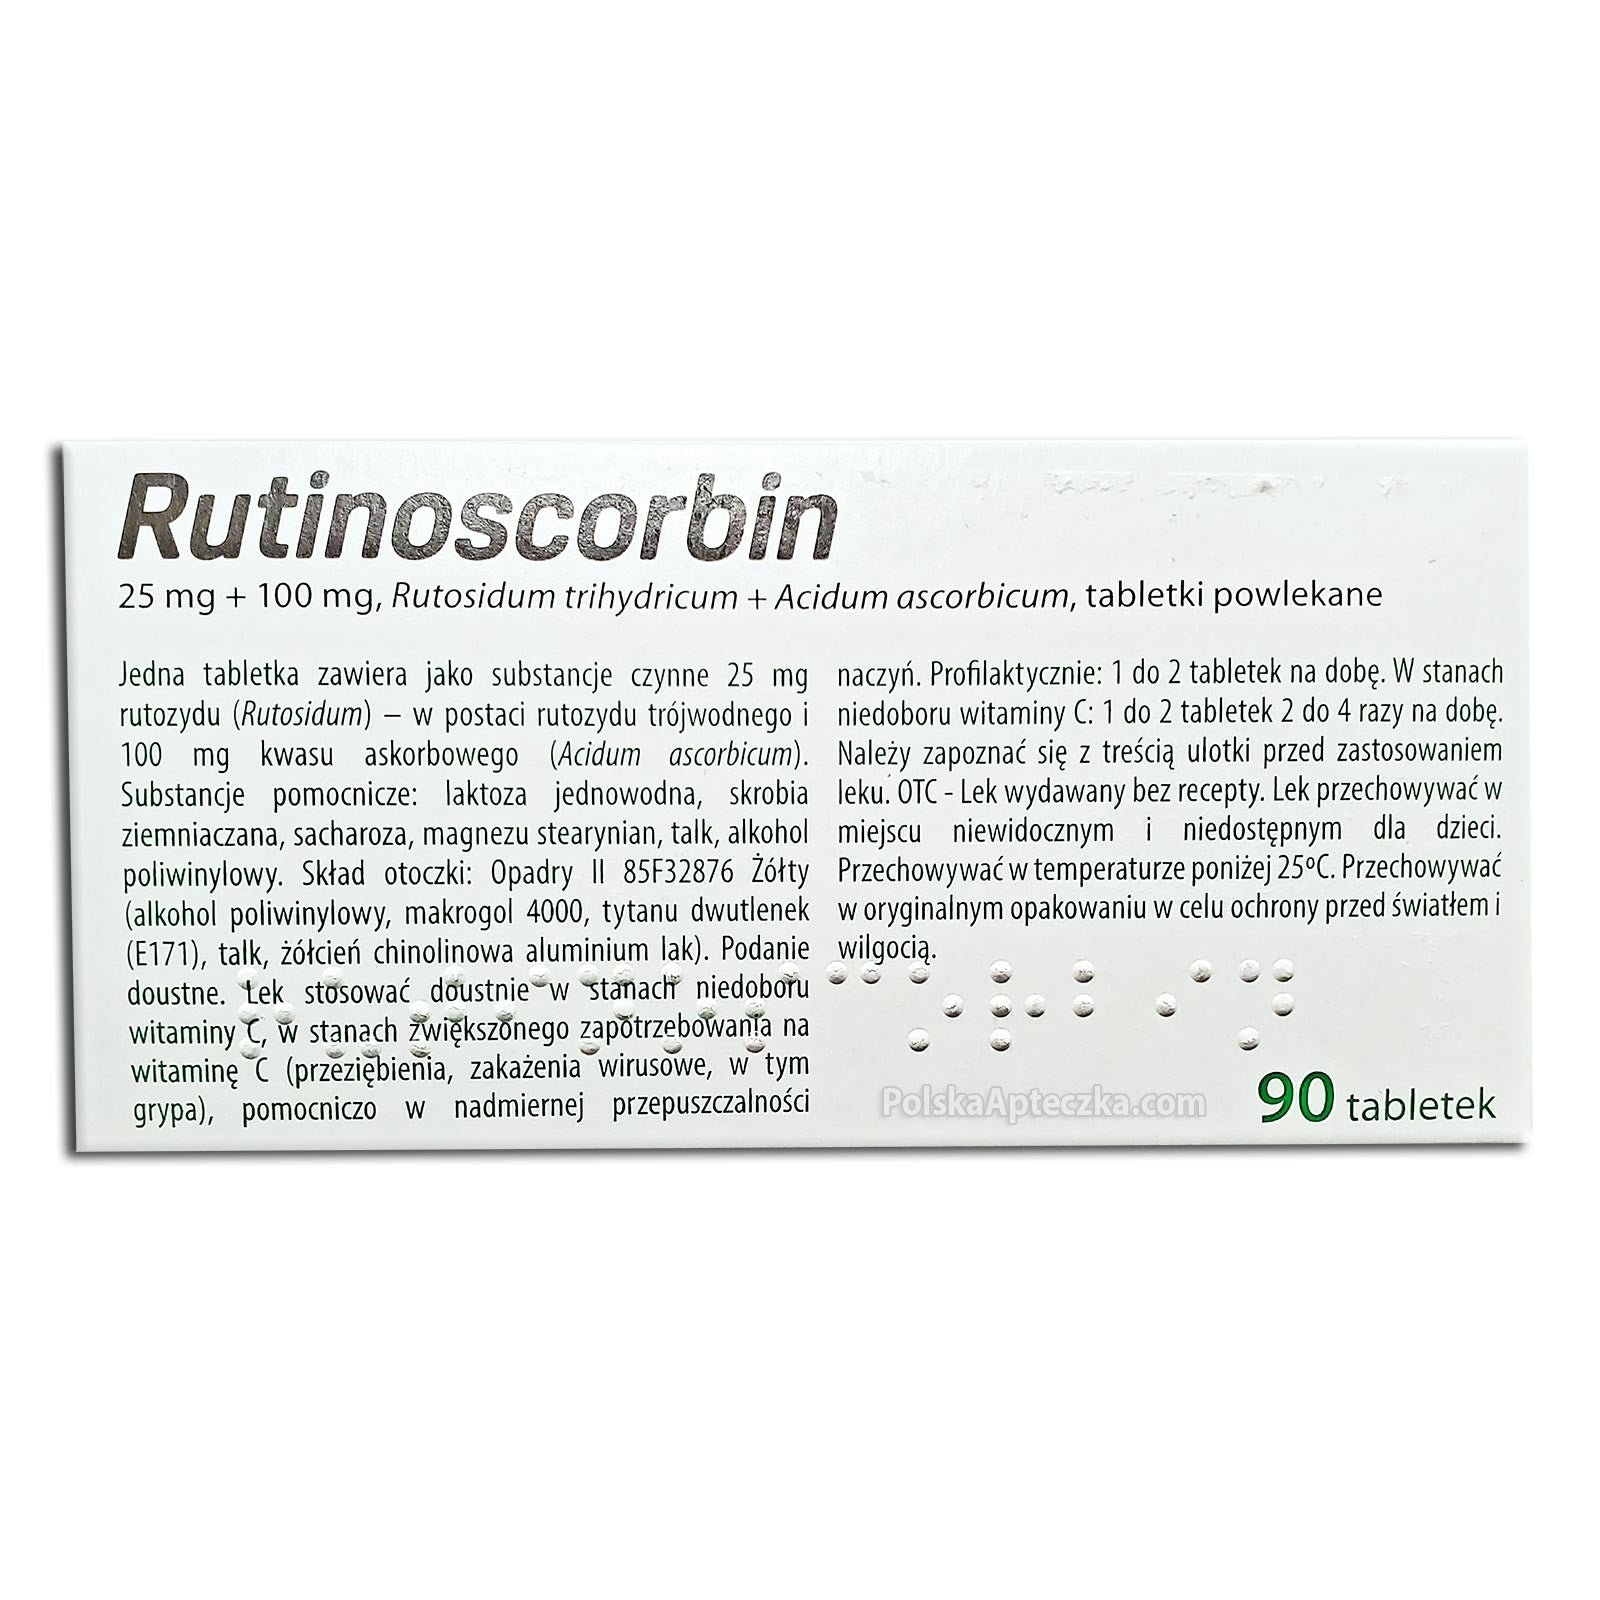 Rutinoscorbin 90 tabletek, GSK